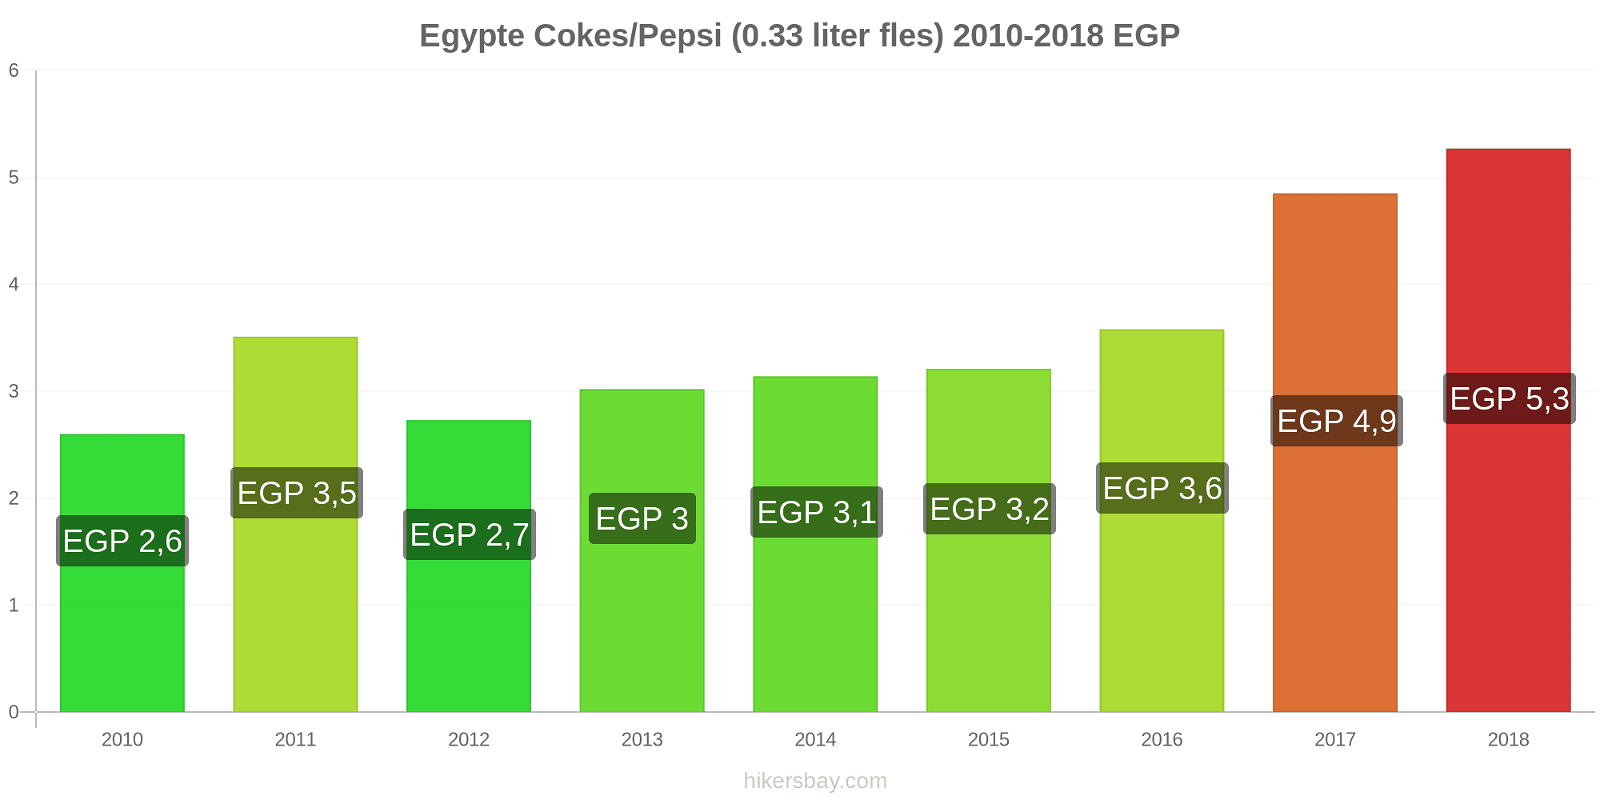 Egypte prijswijzigingen Cokes/Pepsi (0,33 literfles) hikersbay.com